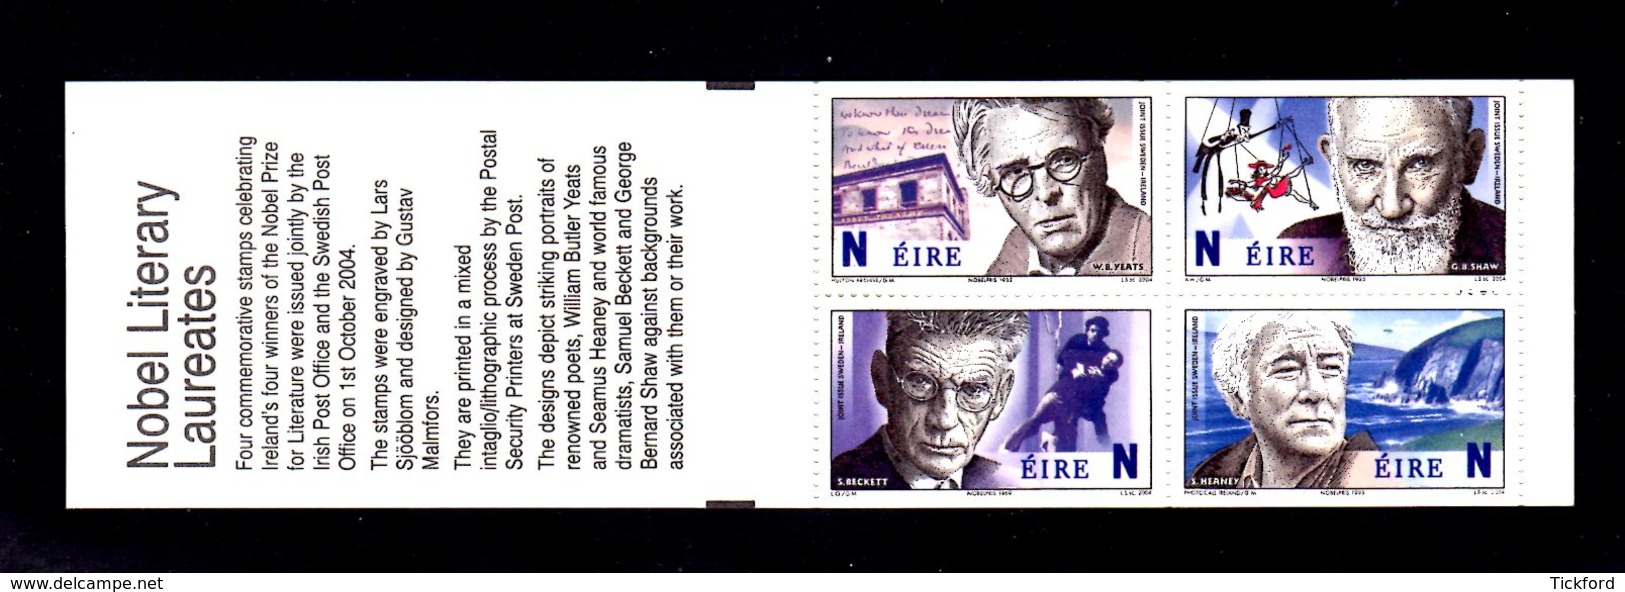 IRLANDE 2004 - CARNET Yvert C1614a - NEUF** MNH - Lauréats Prix Nobel De Littérature Irlandais - Carnets